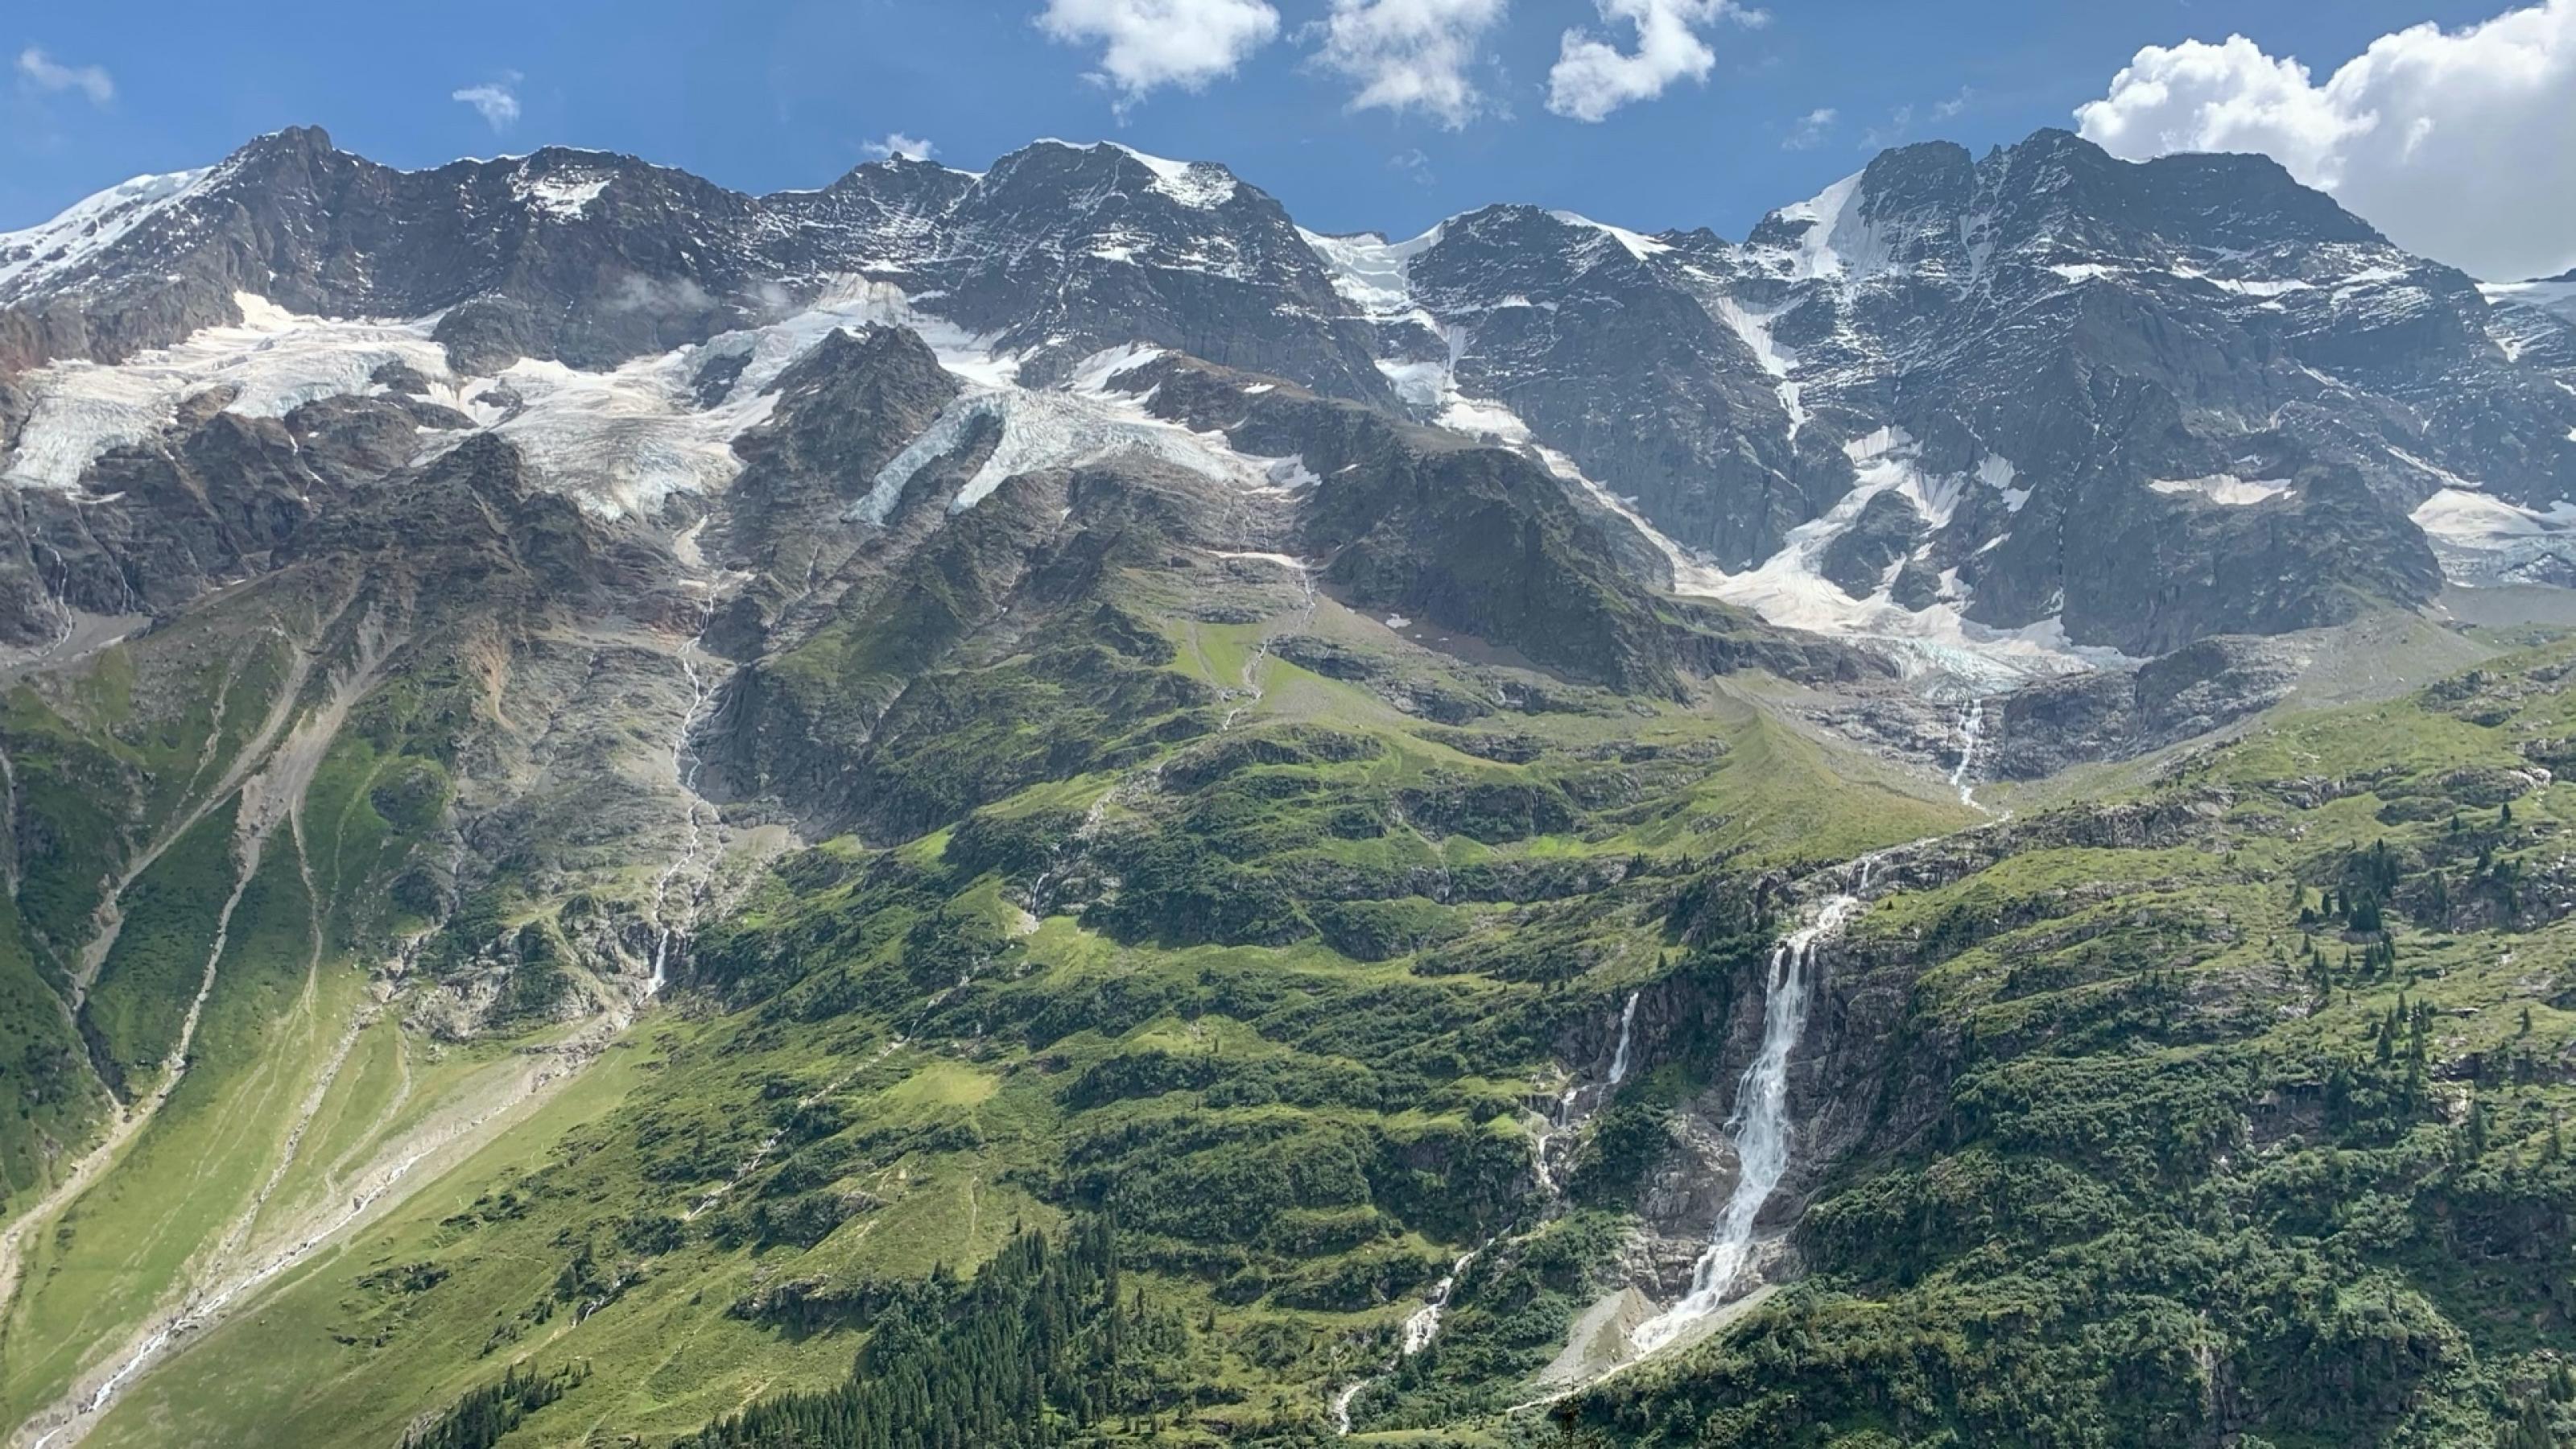 Schneebedeckte Berge ragen in den blauen Himmel. Die Vegetation verändert sich talabwärts von Gestein zu Wald- und Grünflächen. Mittig befindet sich ein Wasserfall.